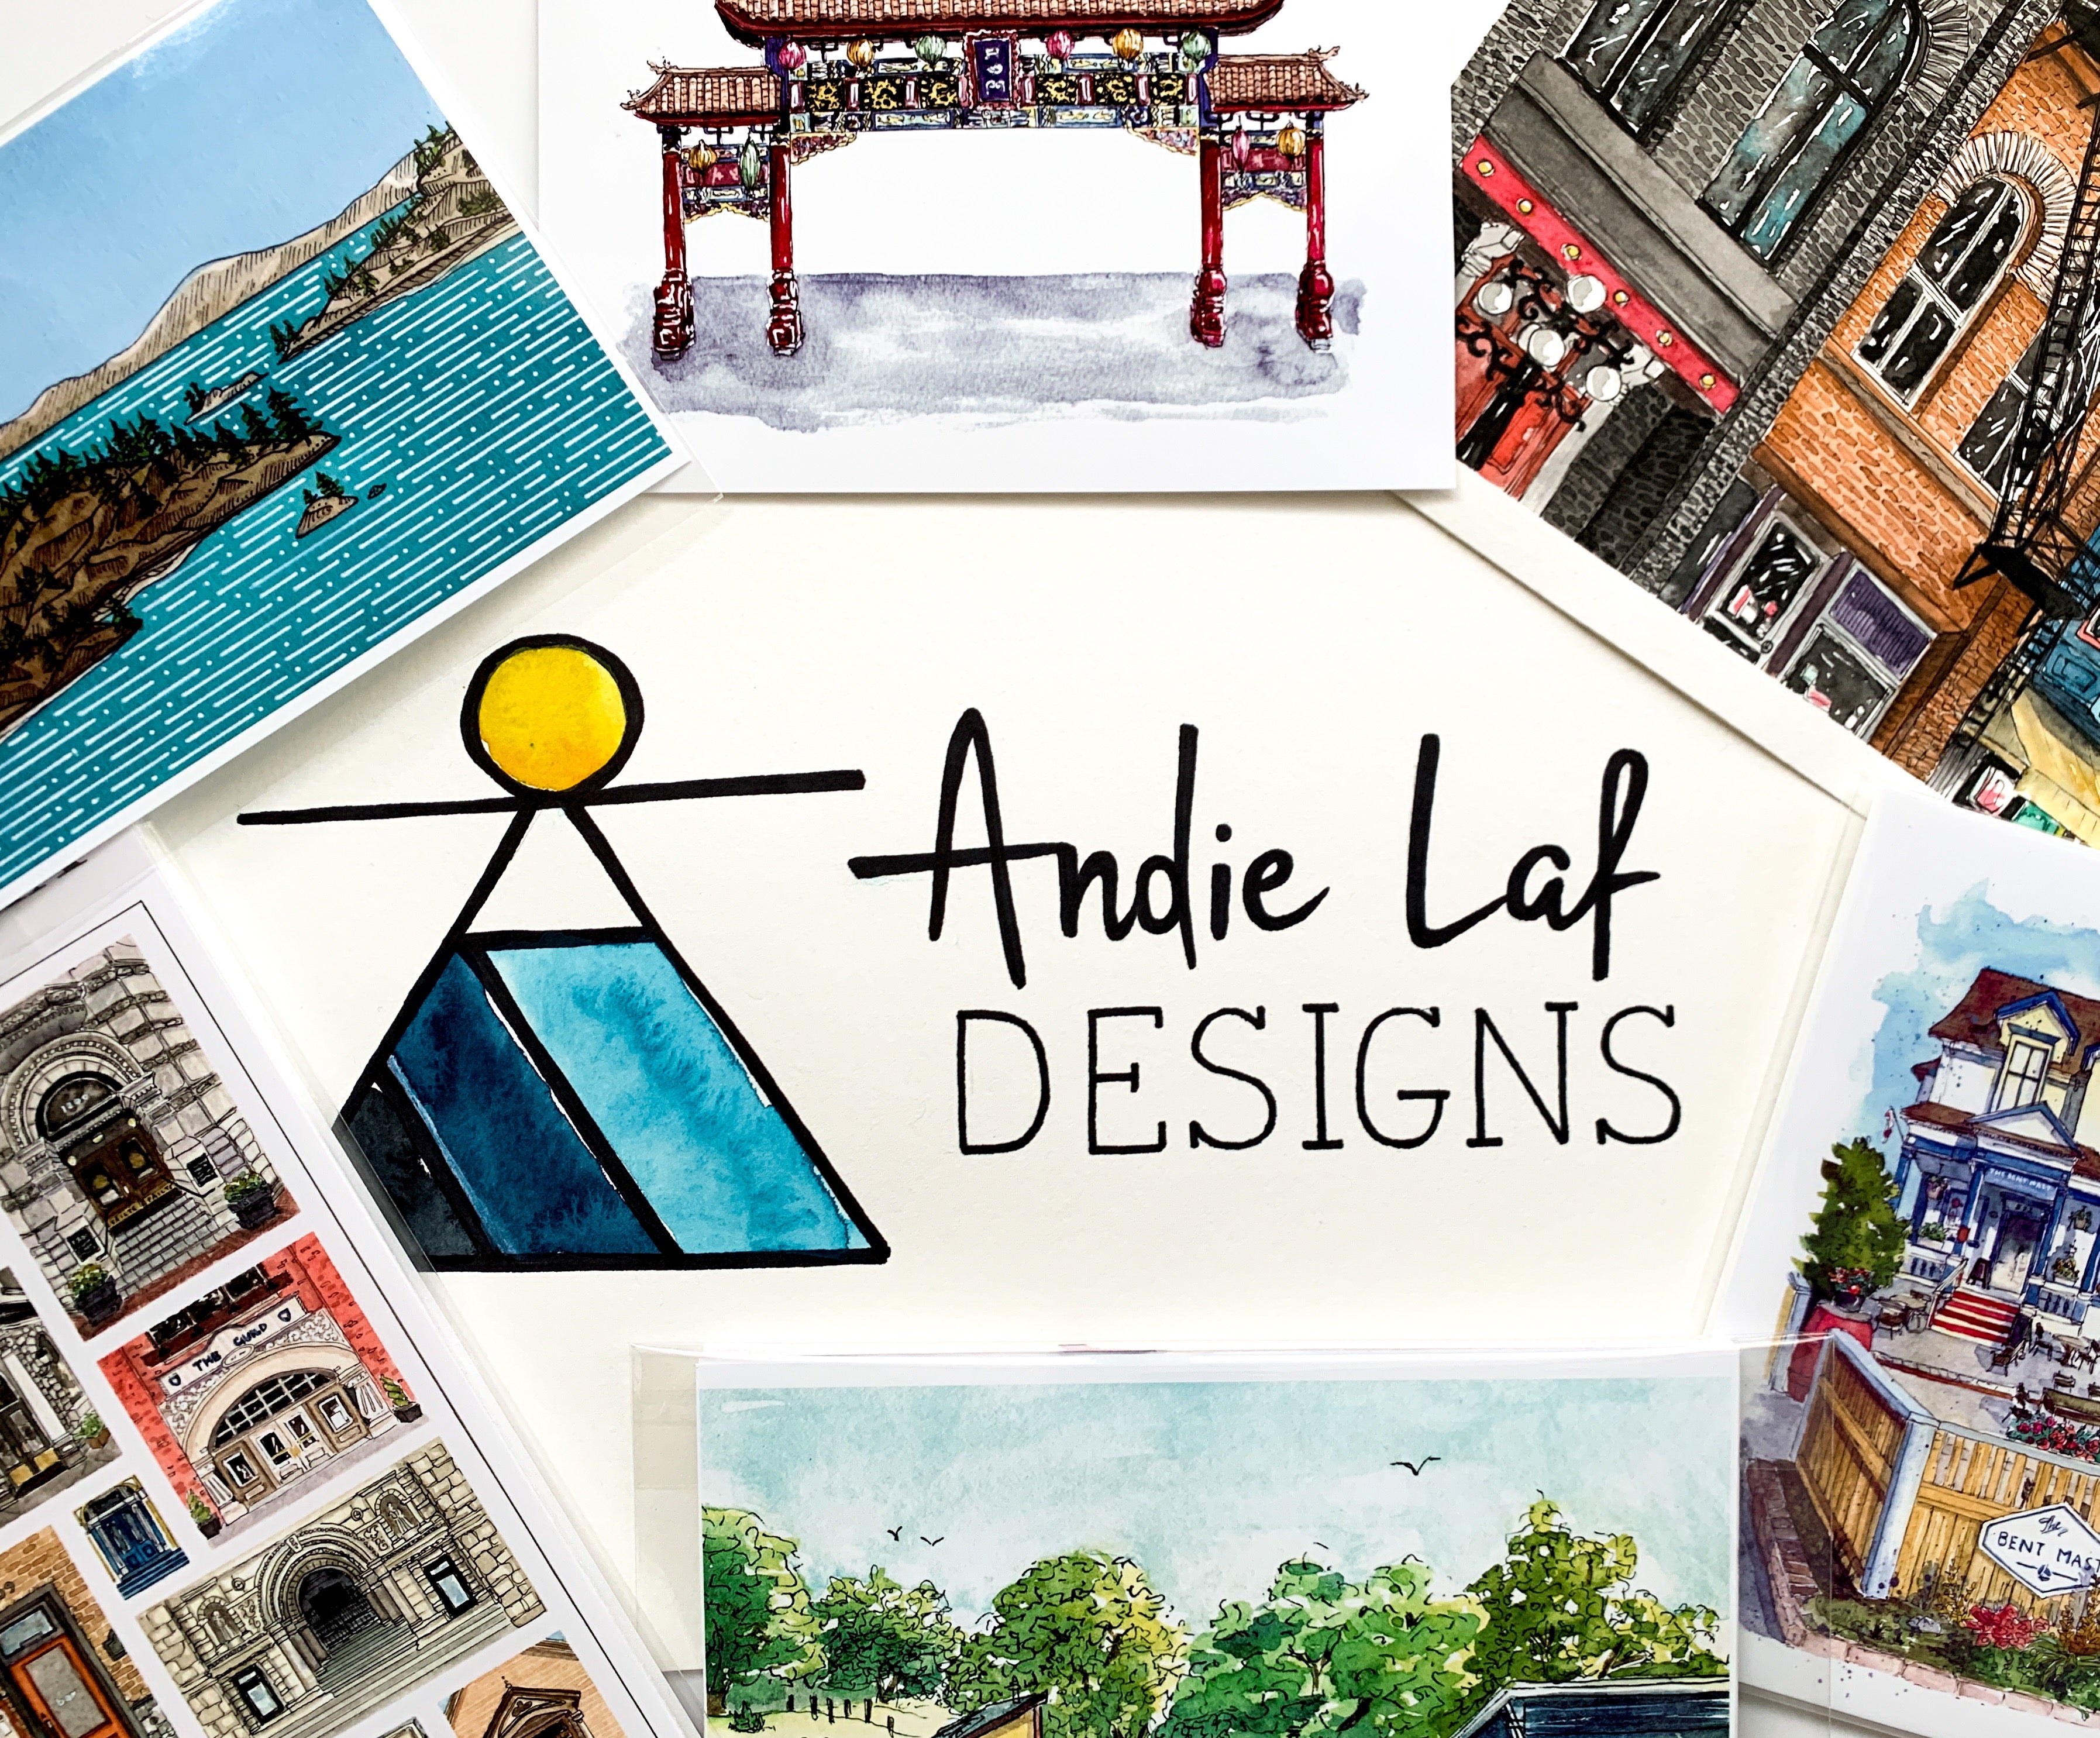 Andie Laf Designs